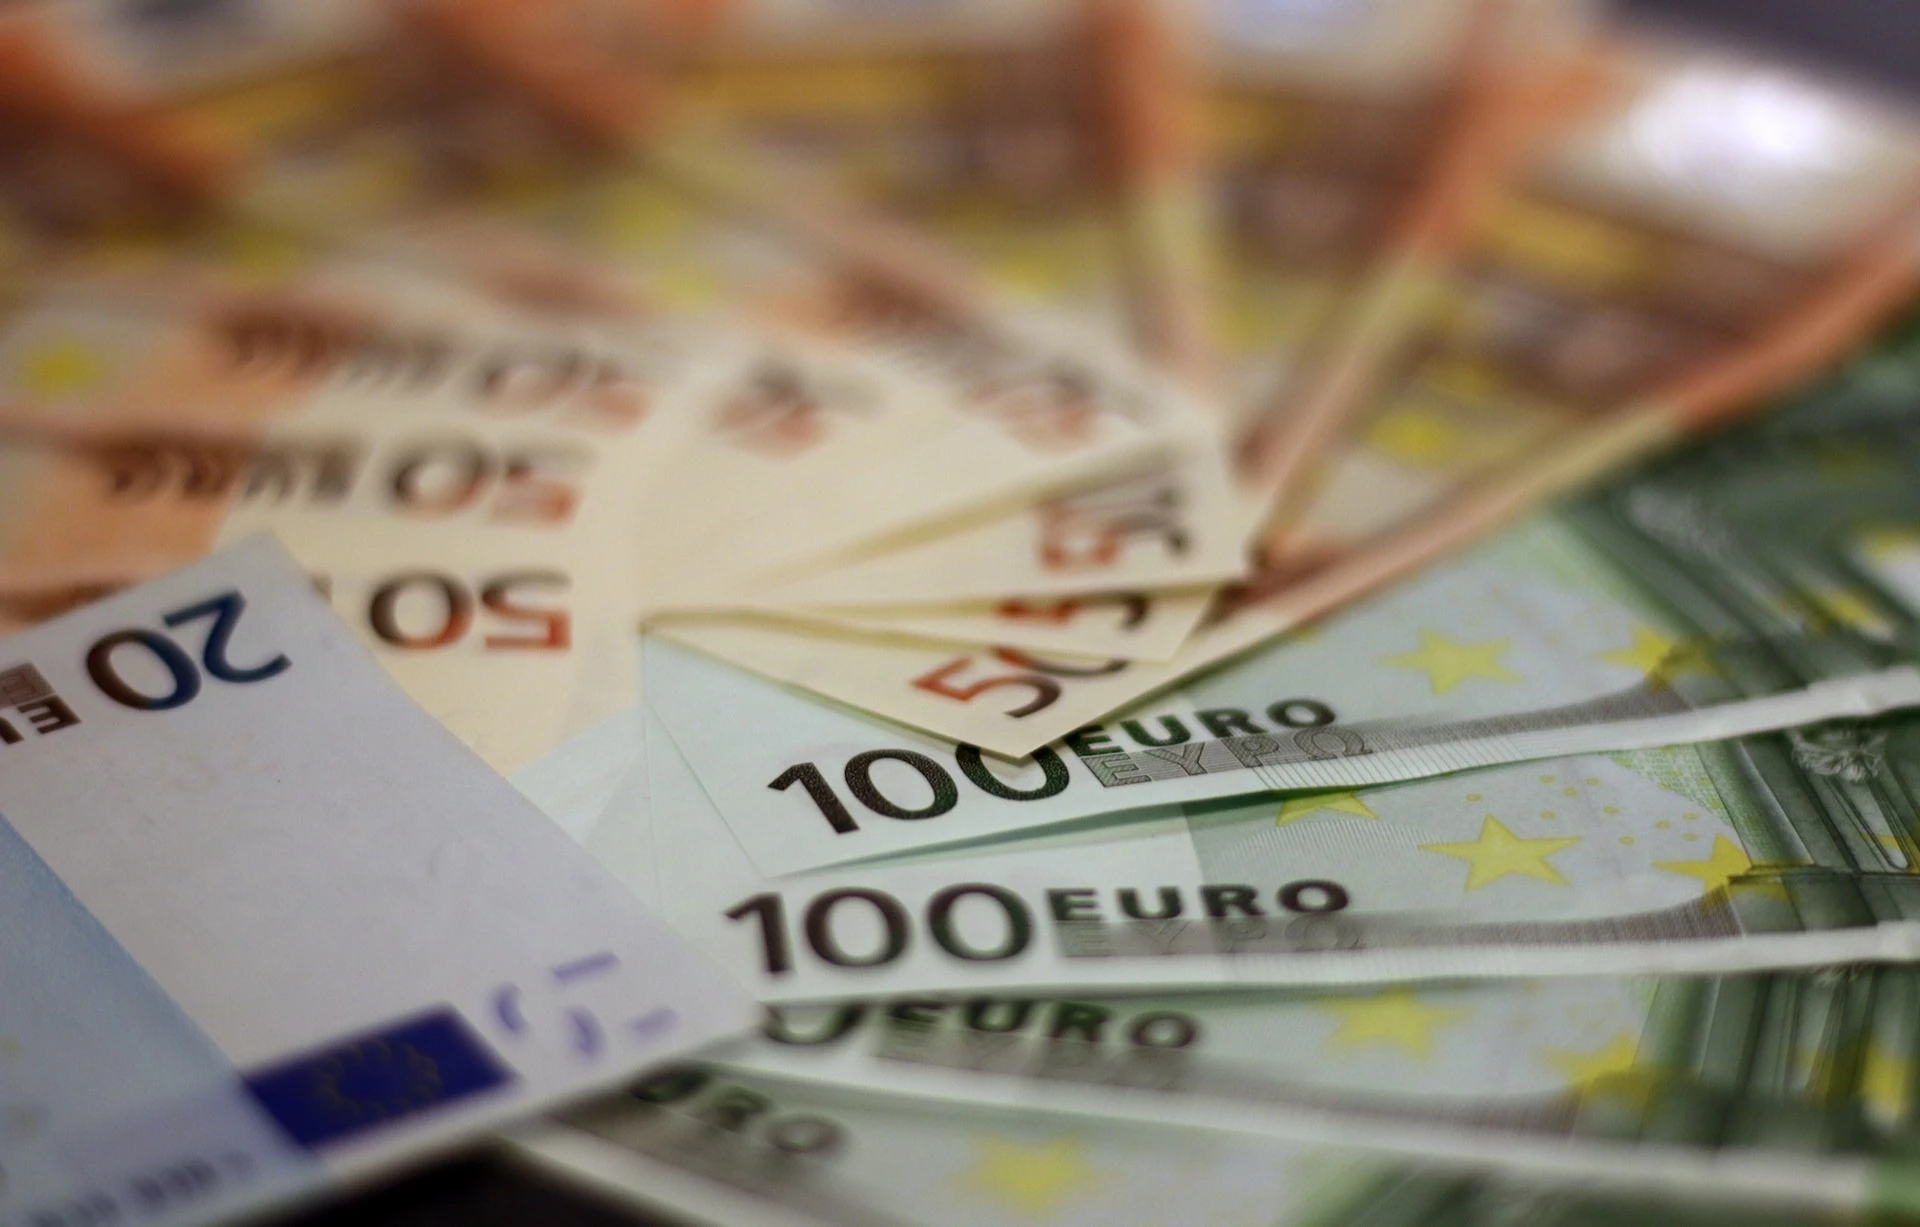 Metalo laužo supirkėjas Skuode įtariamas nesumokėjęs per 130 tūkst. eurų mokesčių